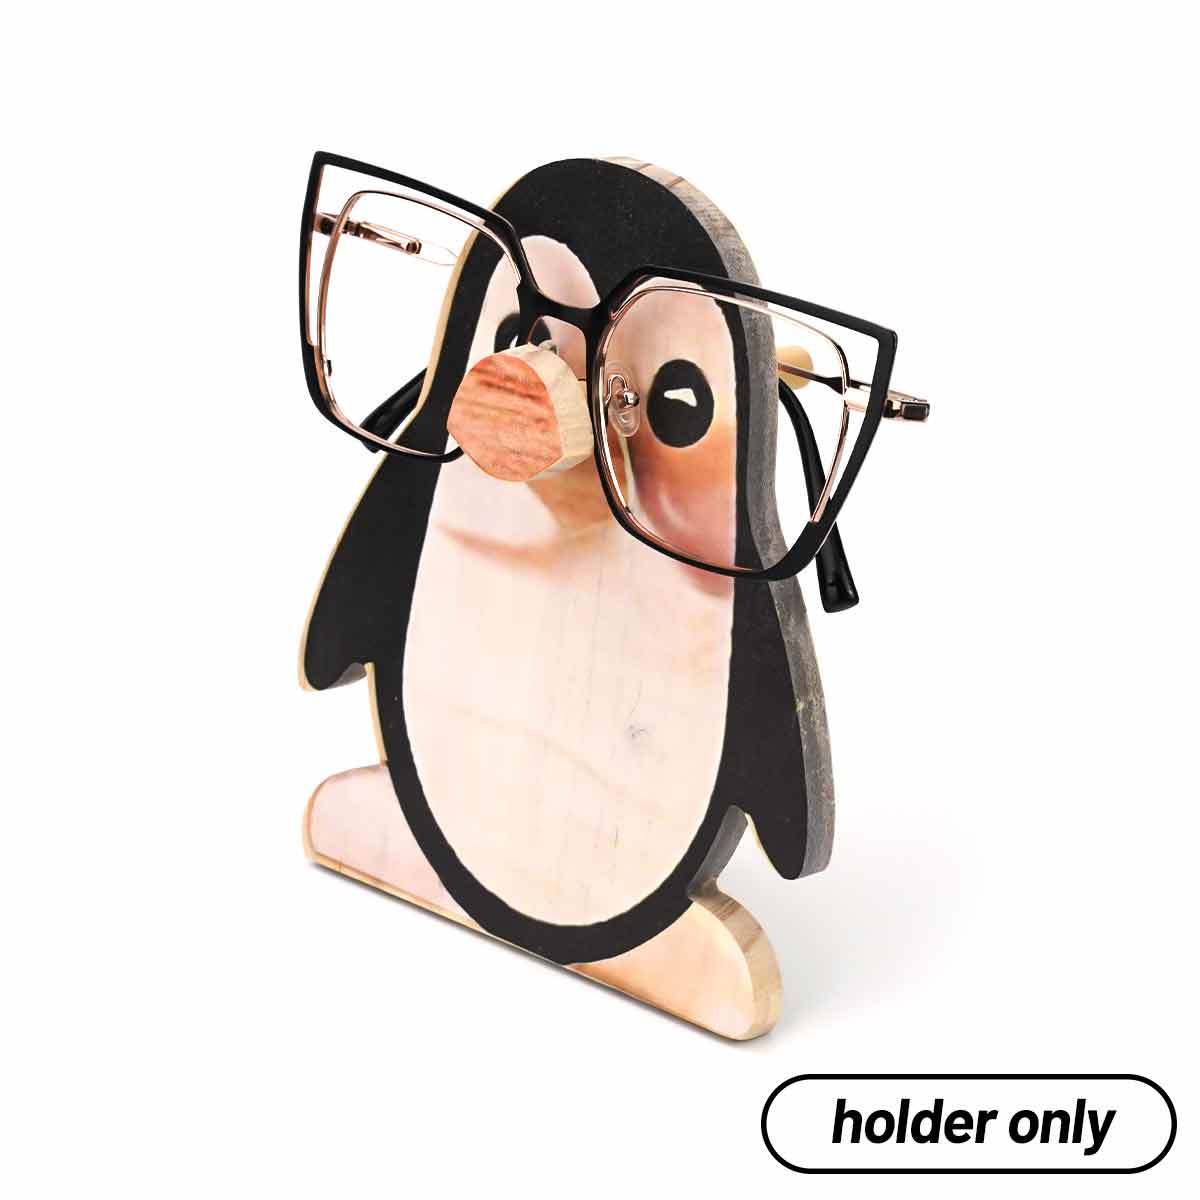 Penguin Eyeglasses holder only